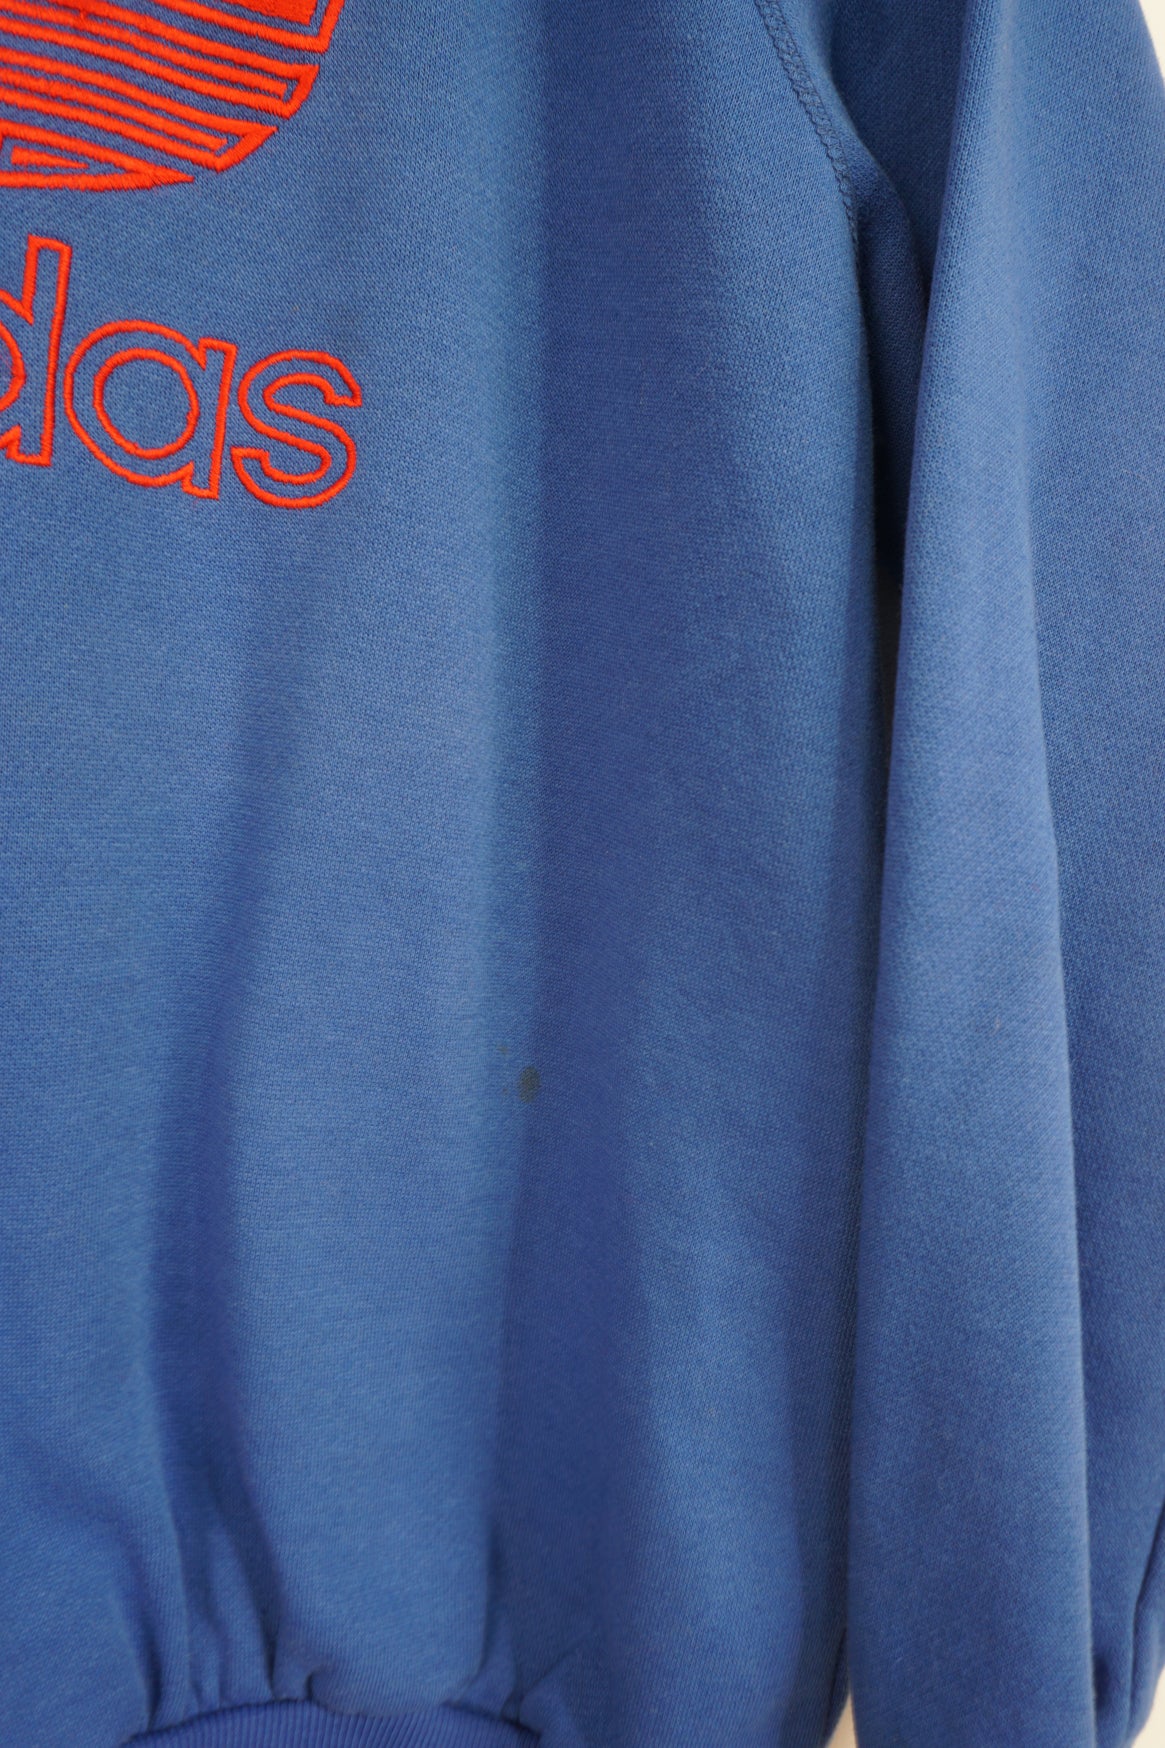 Buy Vintage ADIDAS ORIGINALS Men's Sweatshirt 80's Online in India